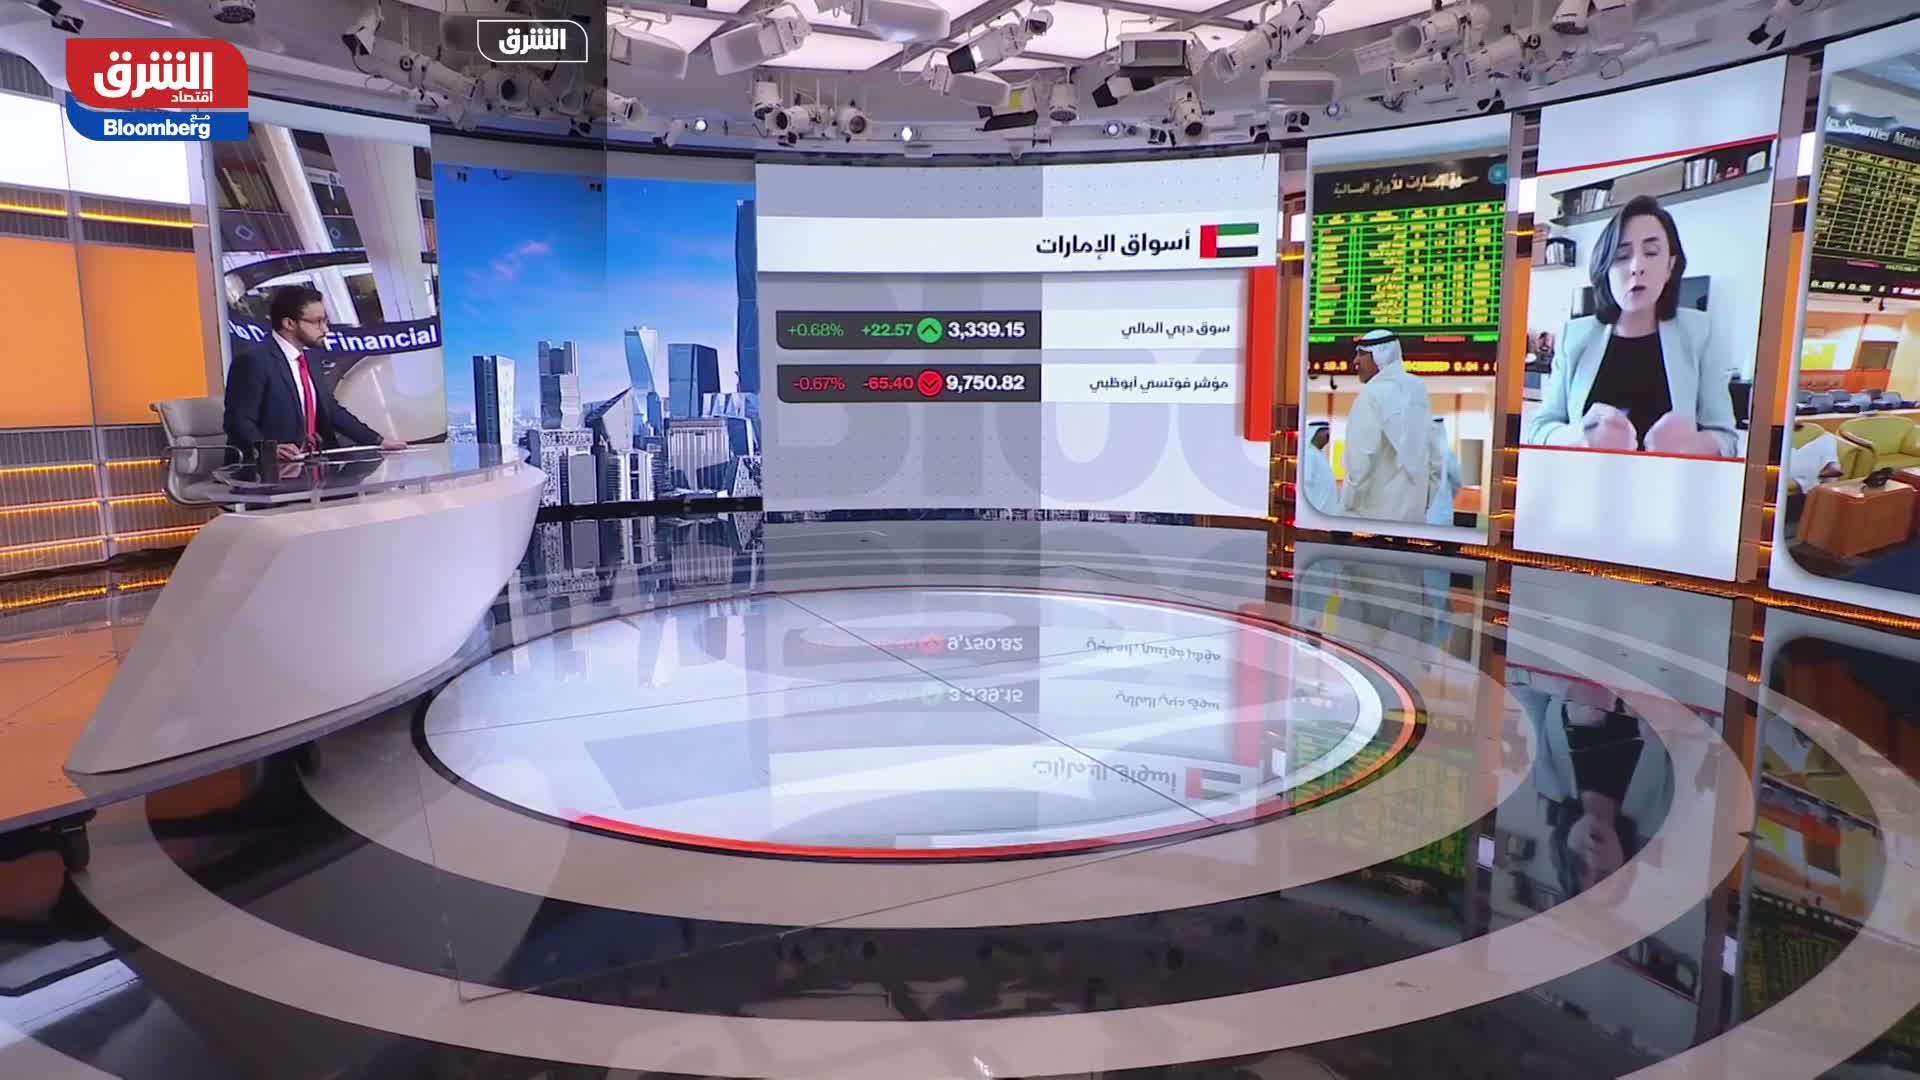 ماري سالم: العنصر الضاغط على الأسواق الخليجية هو الخوف والقلق عند المستثمرين